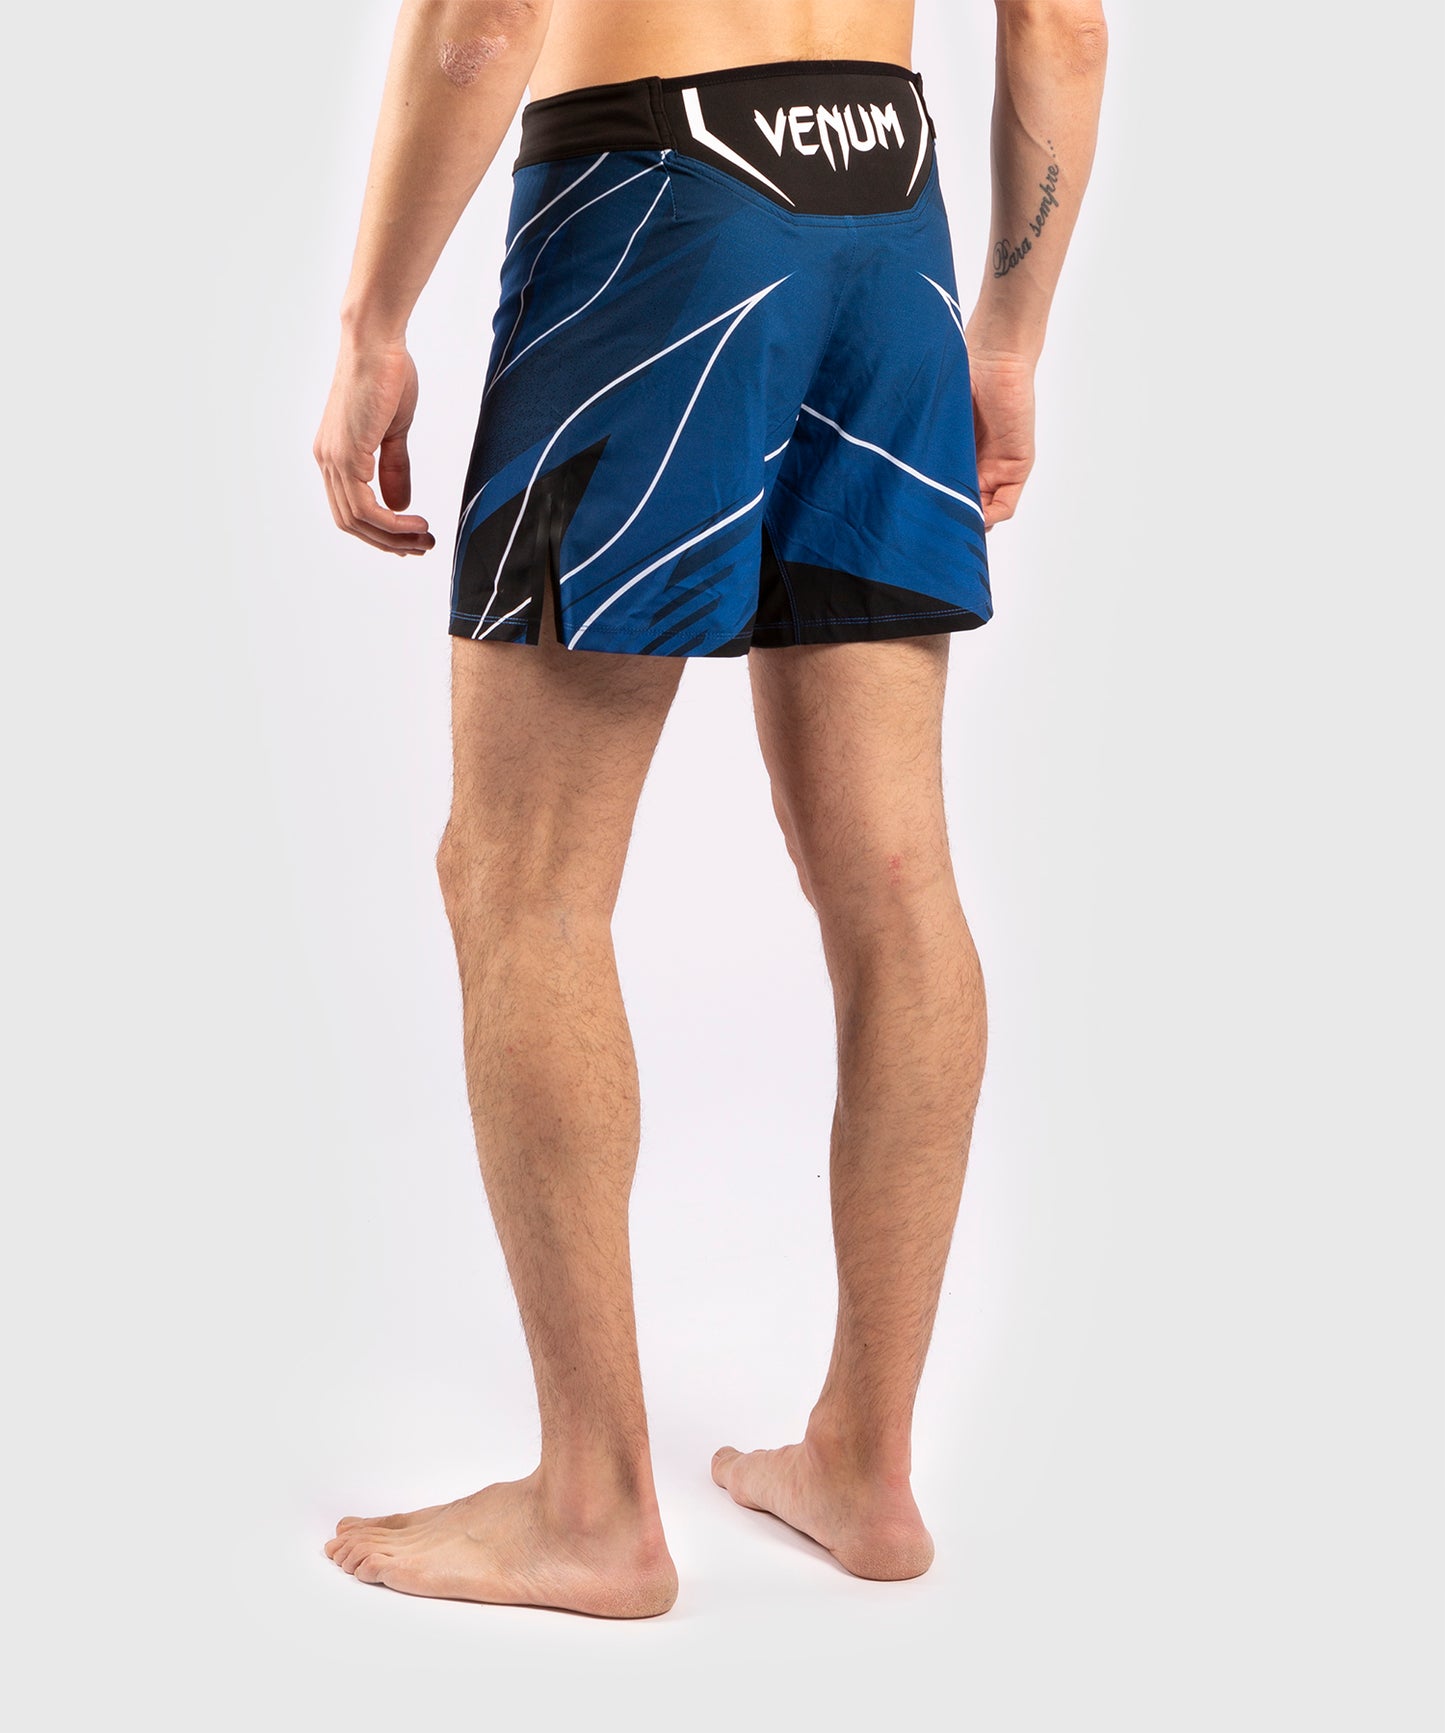 Fightshort Homme UFC Venum Pro Line - Bleu - Shorts de MMA